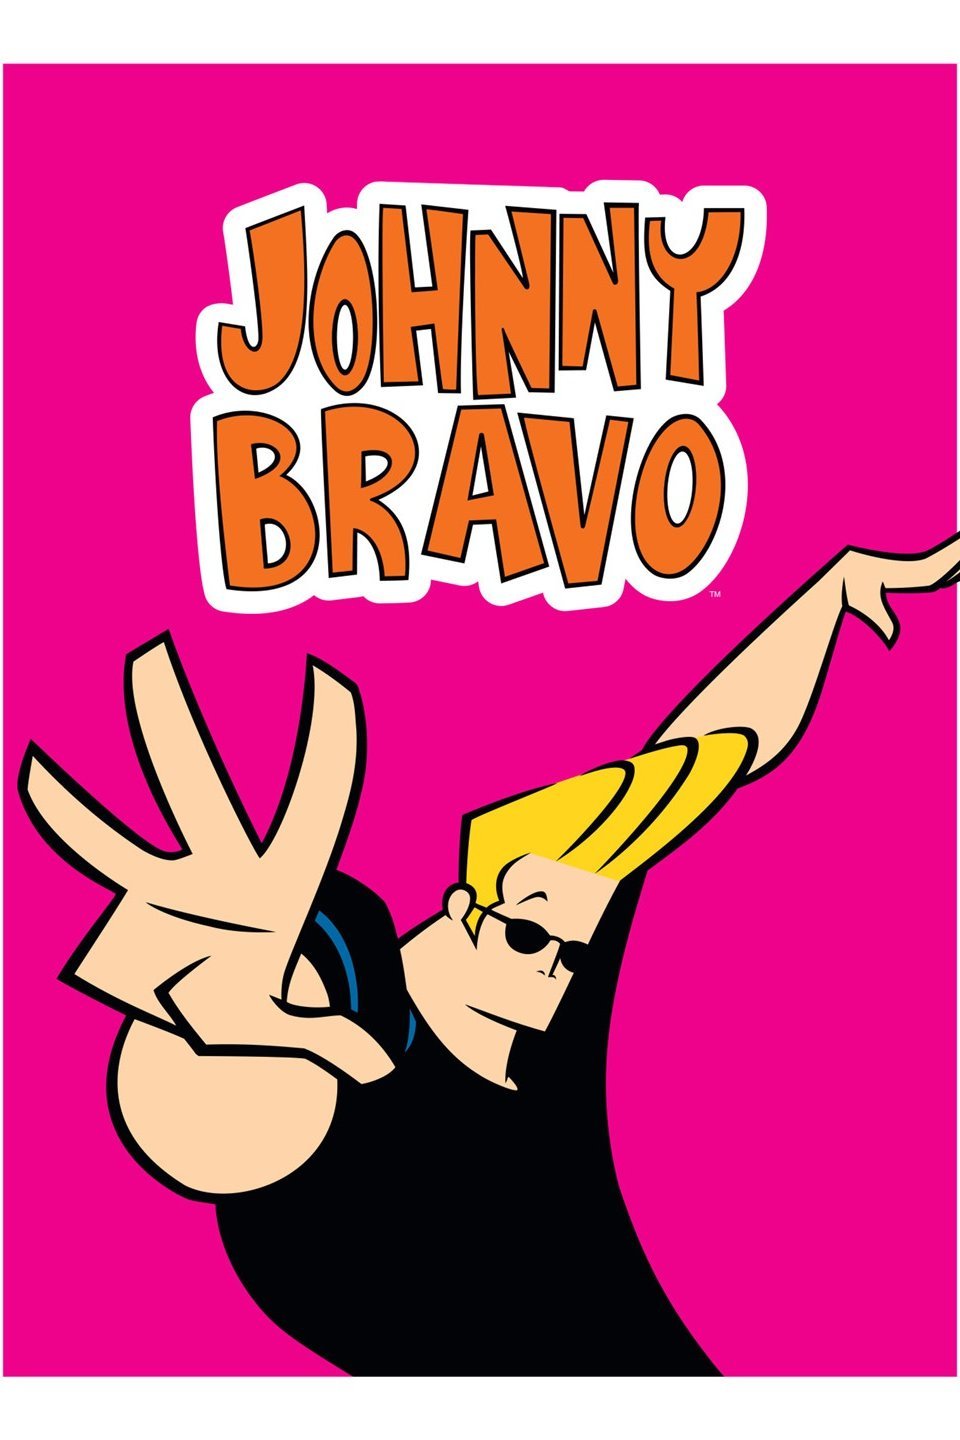 Johnny Bravo Episode 1 In Hindi